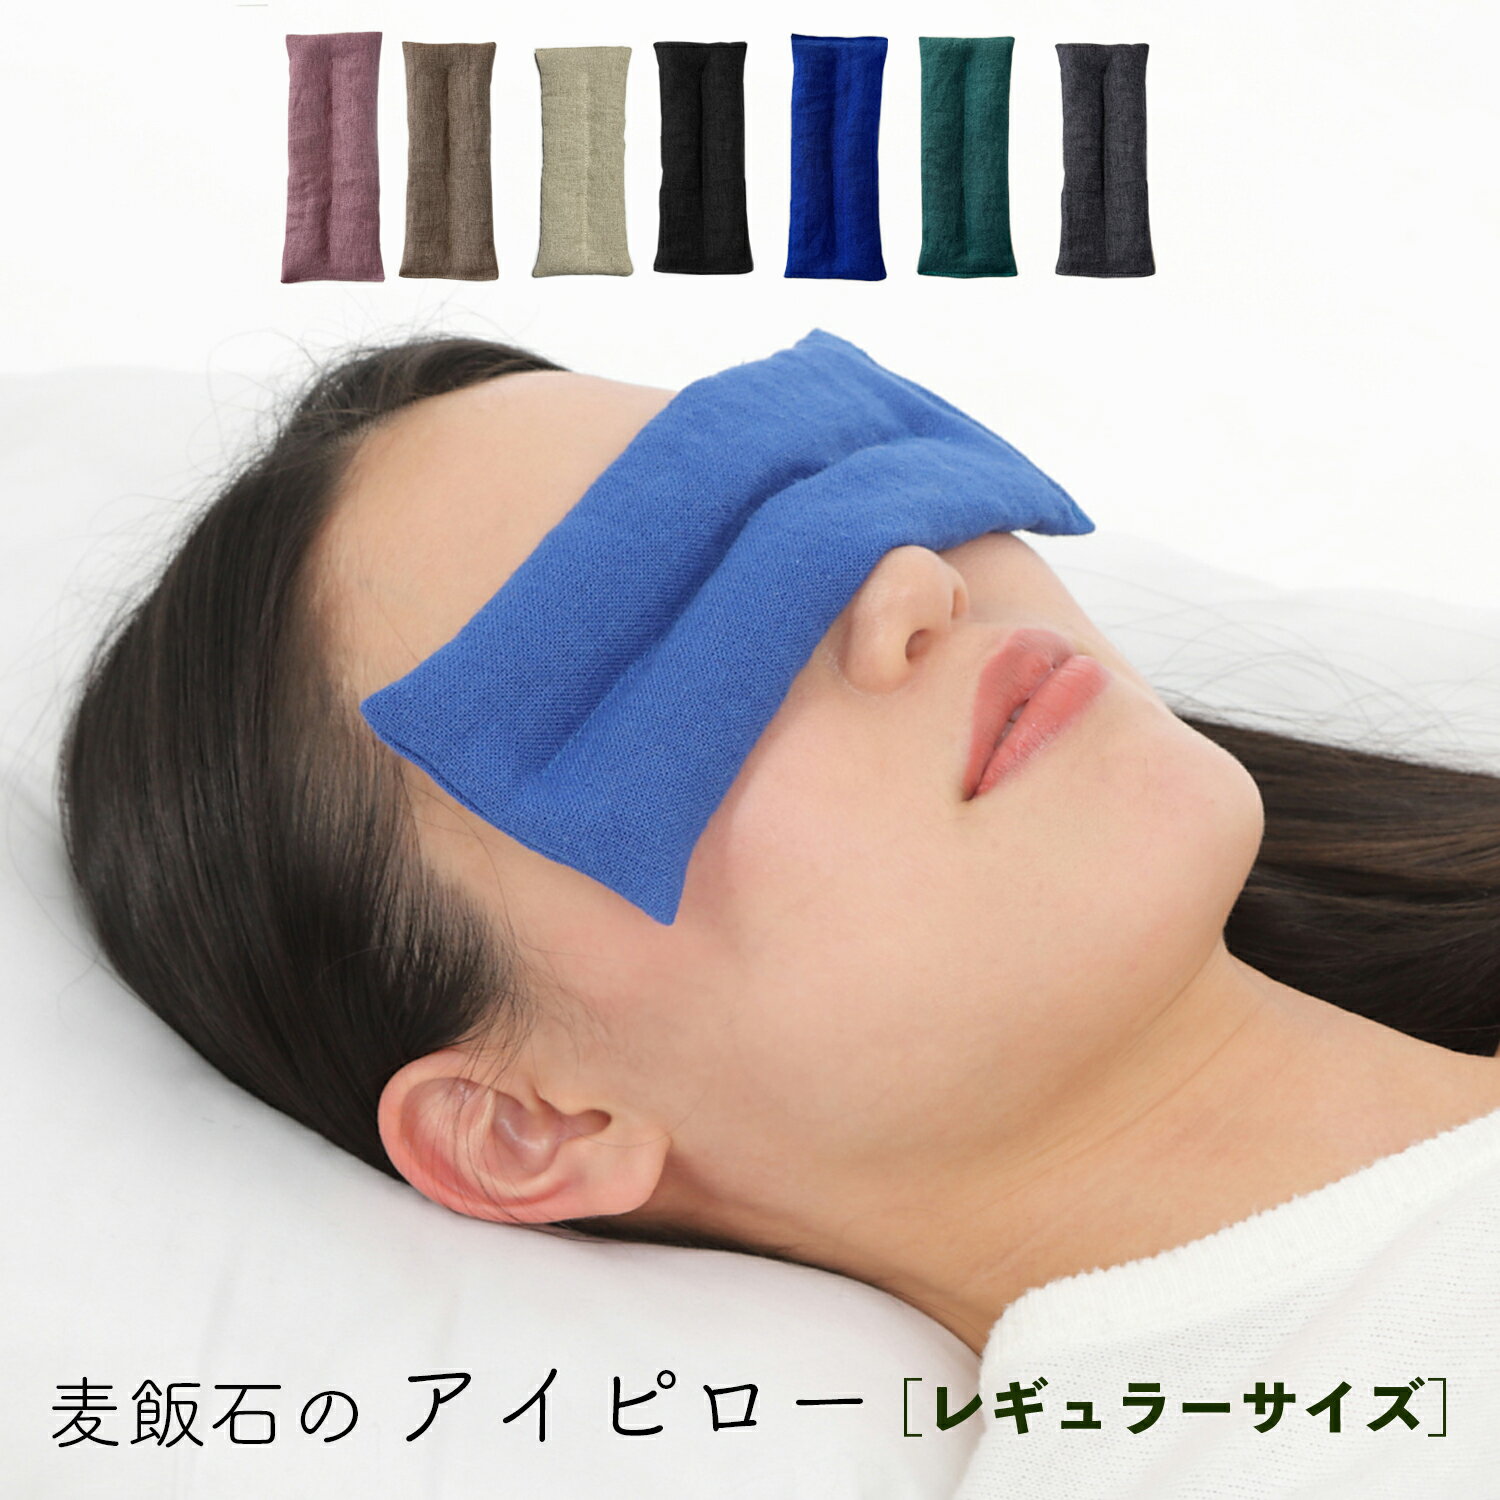 アイマスク 革新 3D立体アイマスク 睡眠用 安眠 快眠 遮光用アイマスク 男女兼用 軽量 目隠し 持ち運び用袋付き 耳栓付き 圧迫感なし( ブラック)